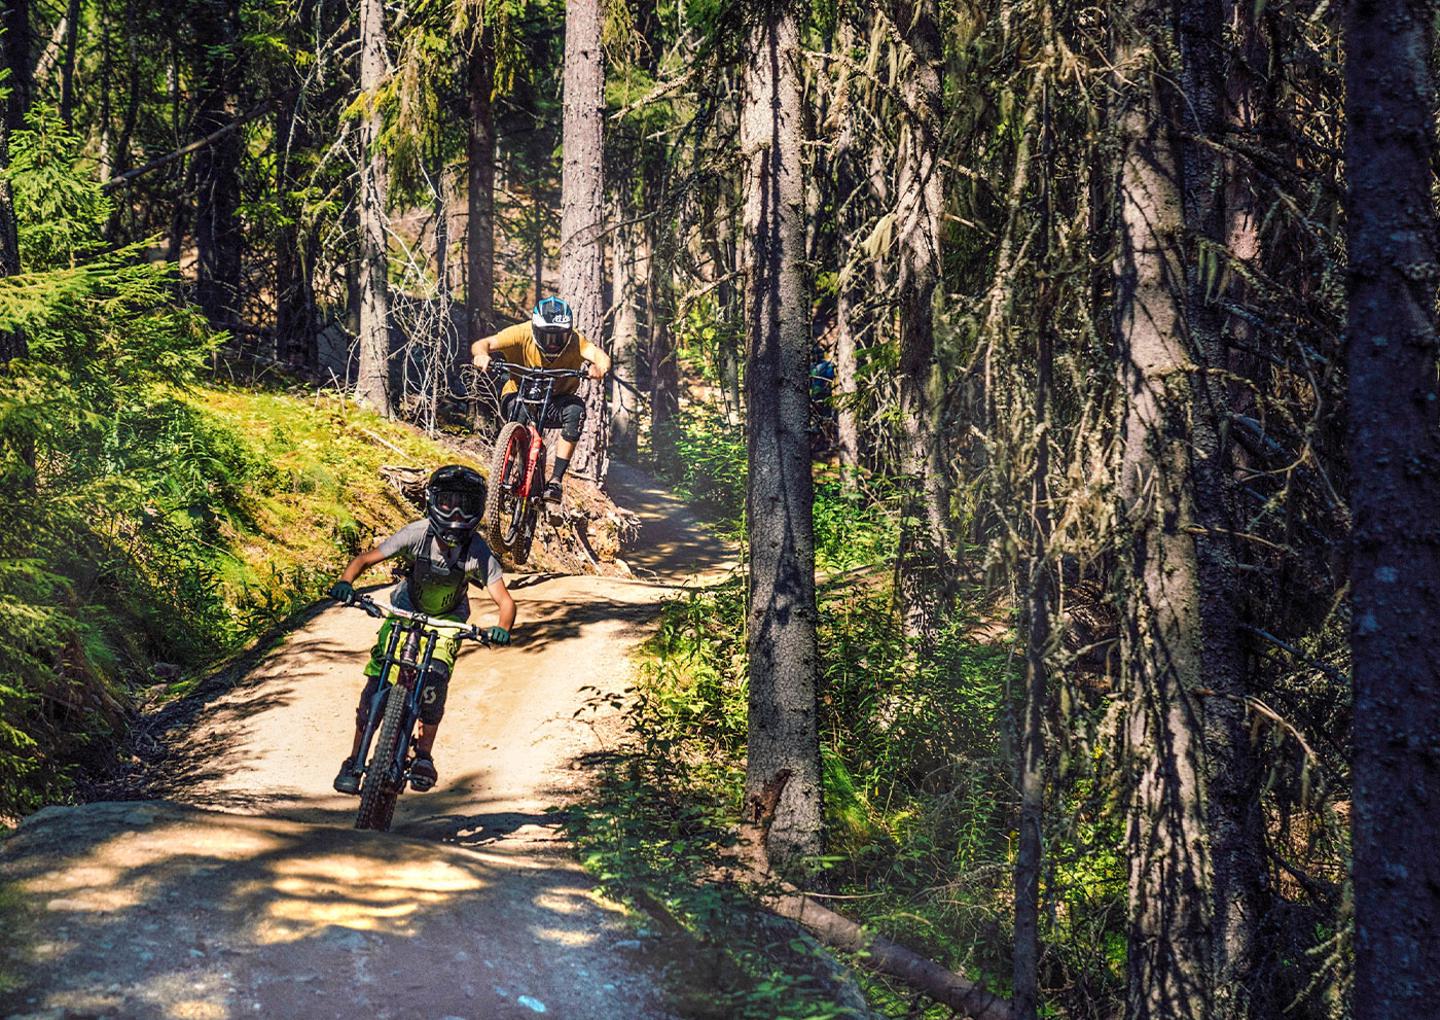 Järvsö Bergscykelpark